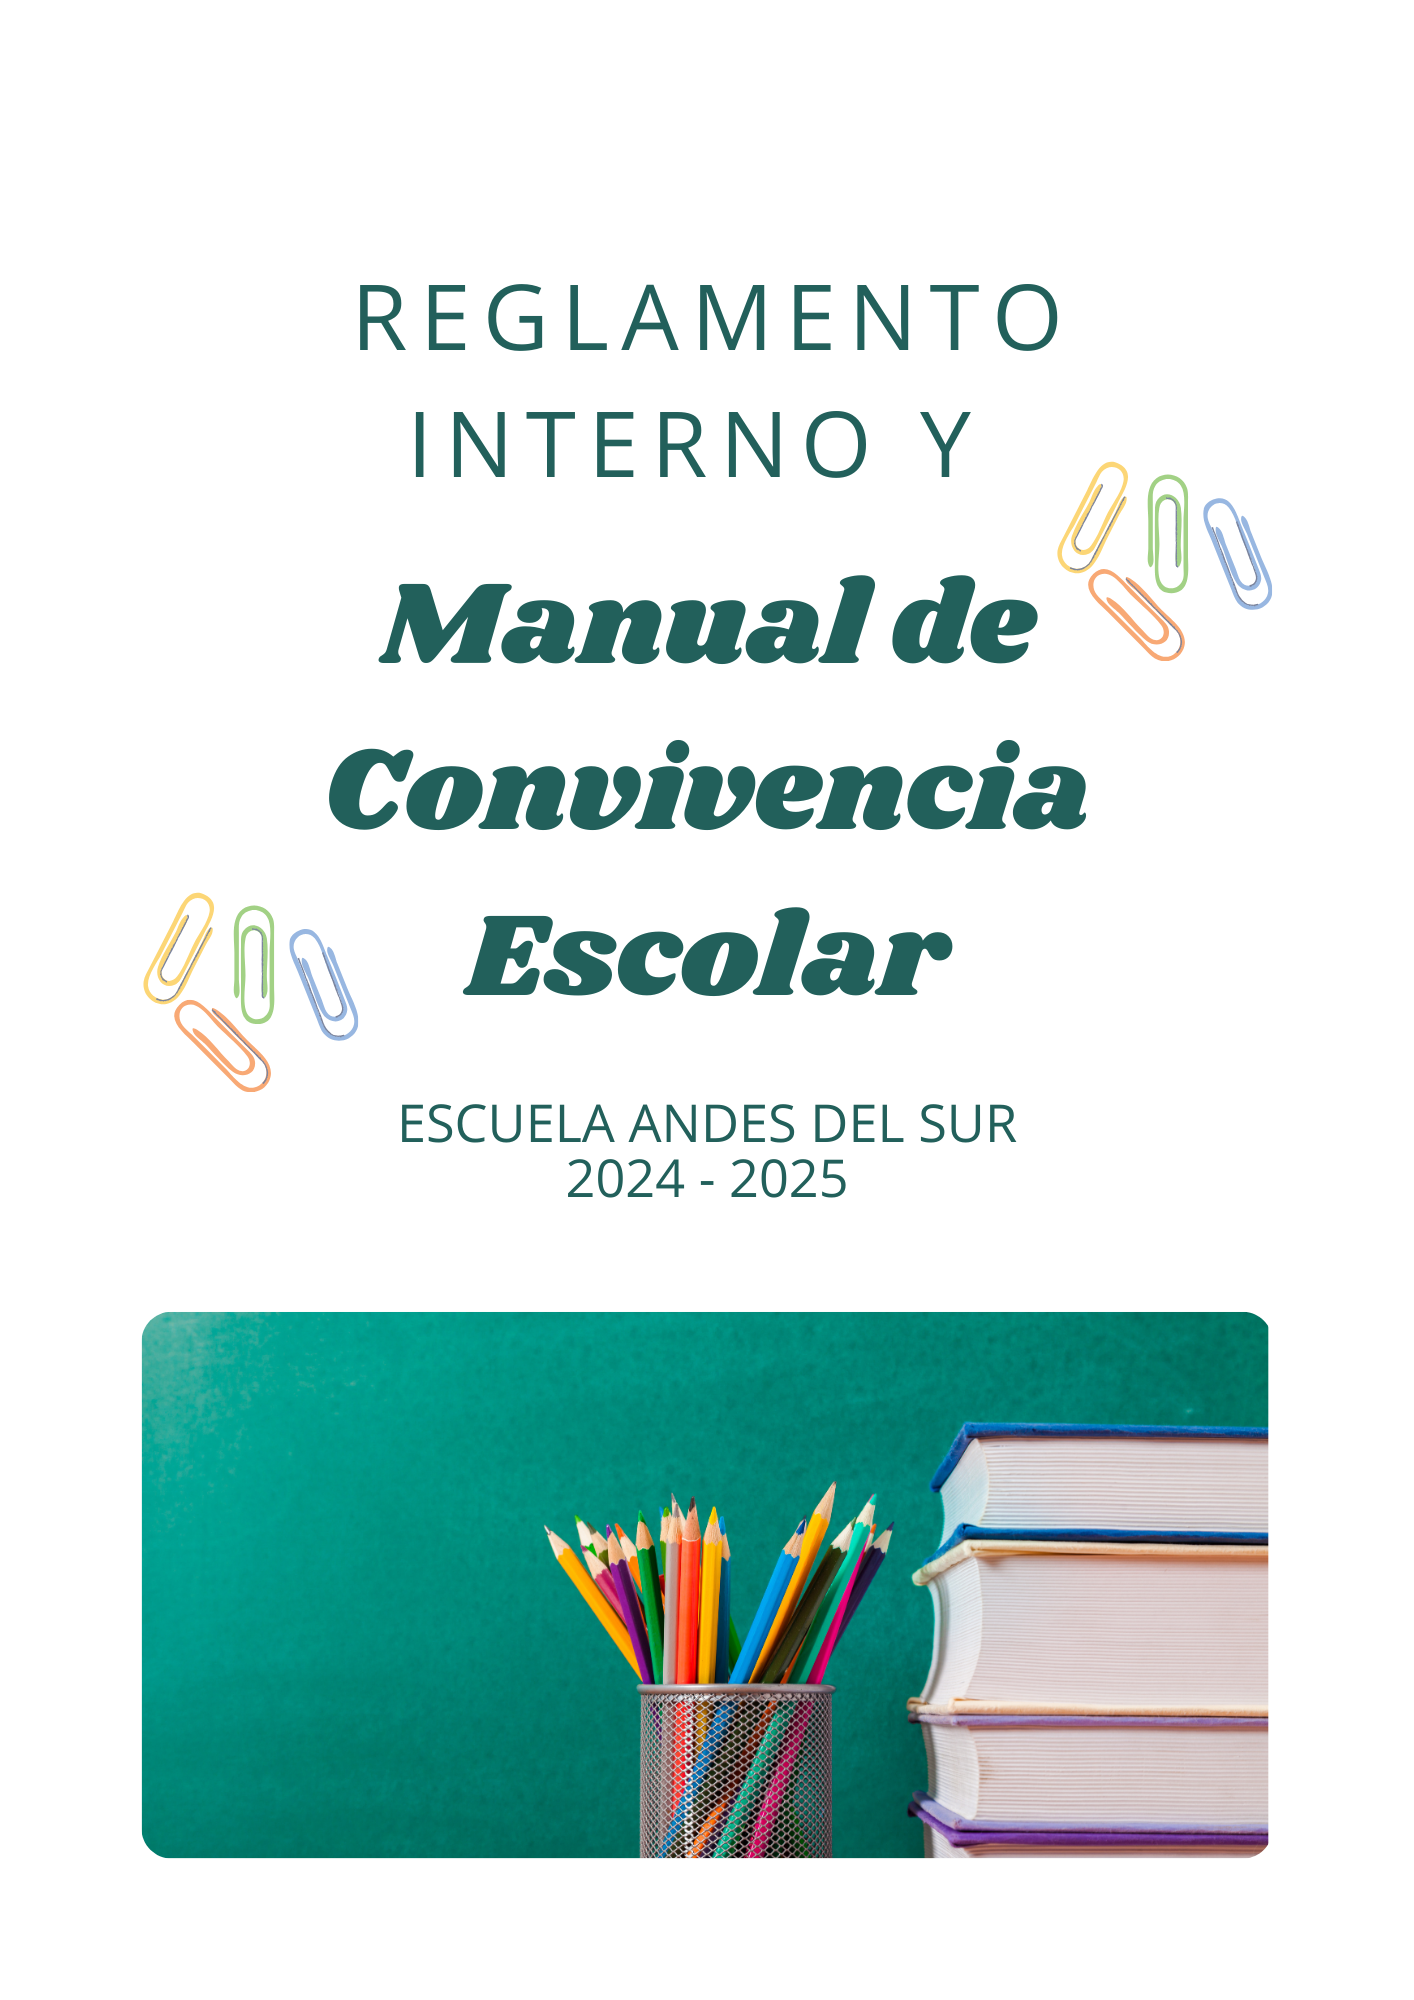 REGLAMENTO INTERNO Y MANUAL DE CONVIVENCIA ESCOLAR ESCUELA ANDES DEL SUR 2024 - 2025